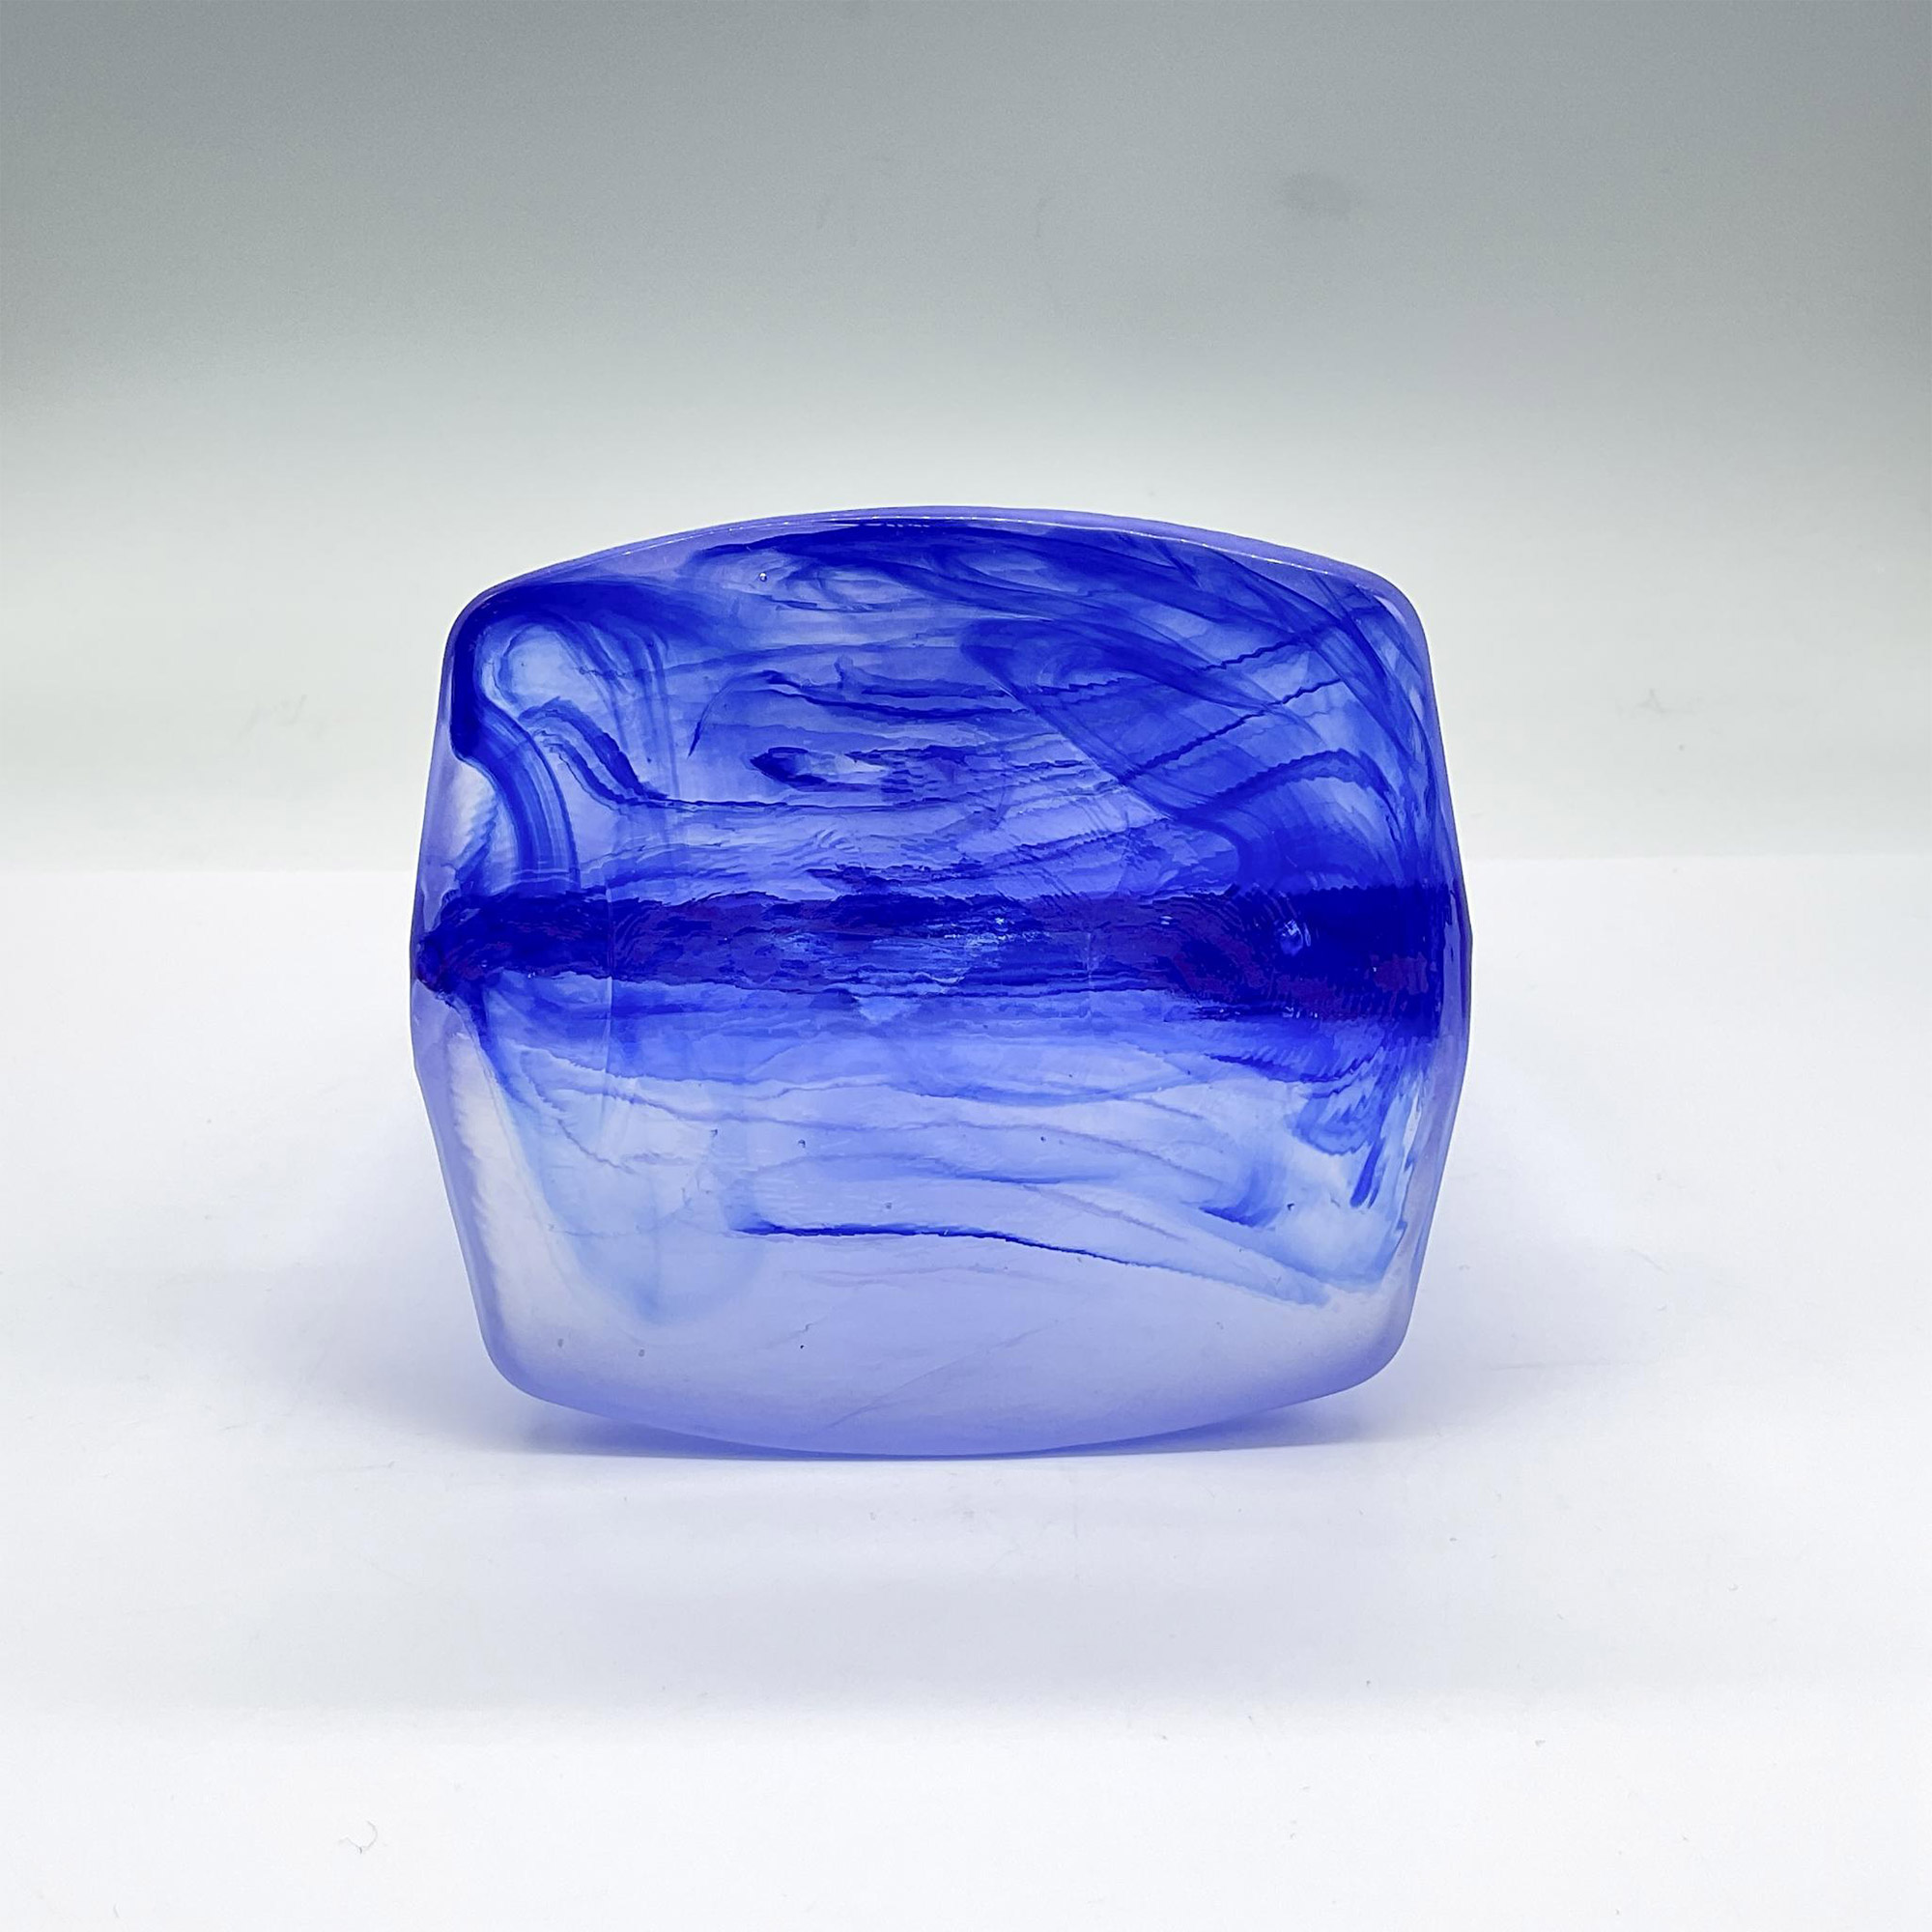 Kosta Boda Glass Candleholder, Ice Age Blue - Image 3 of 3